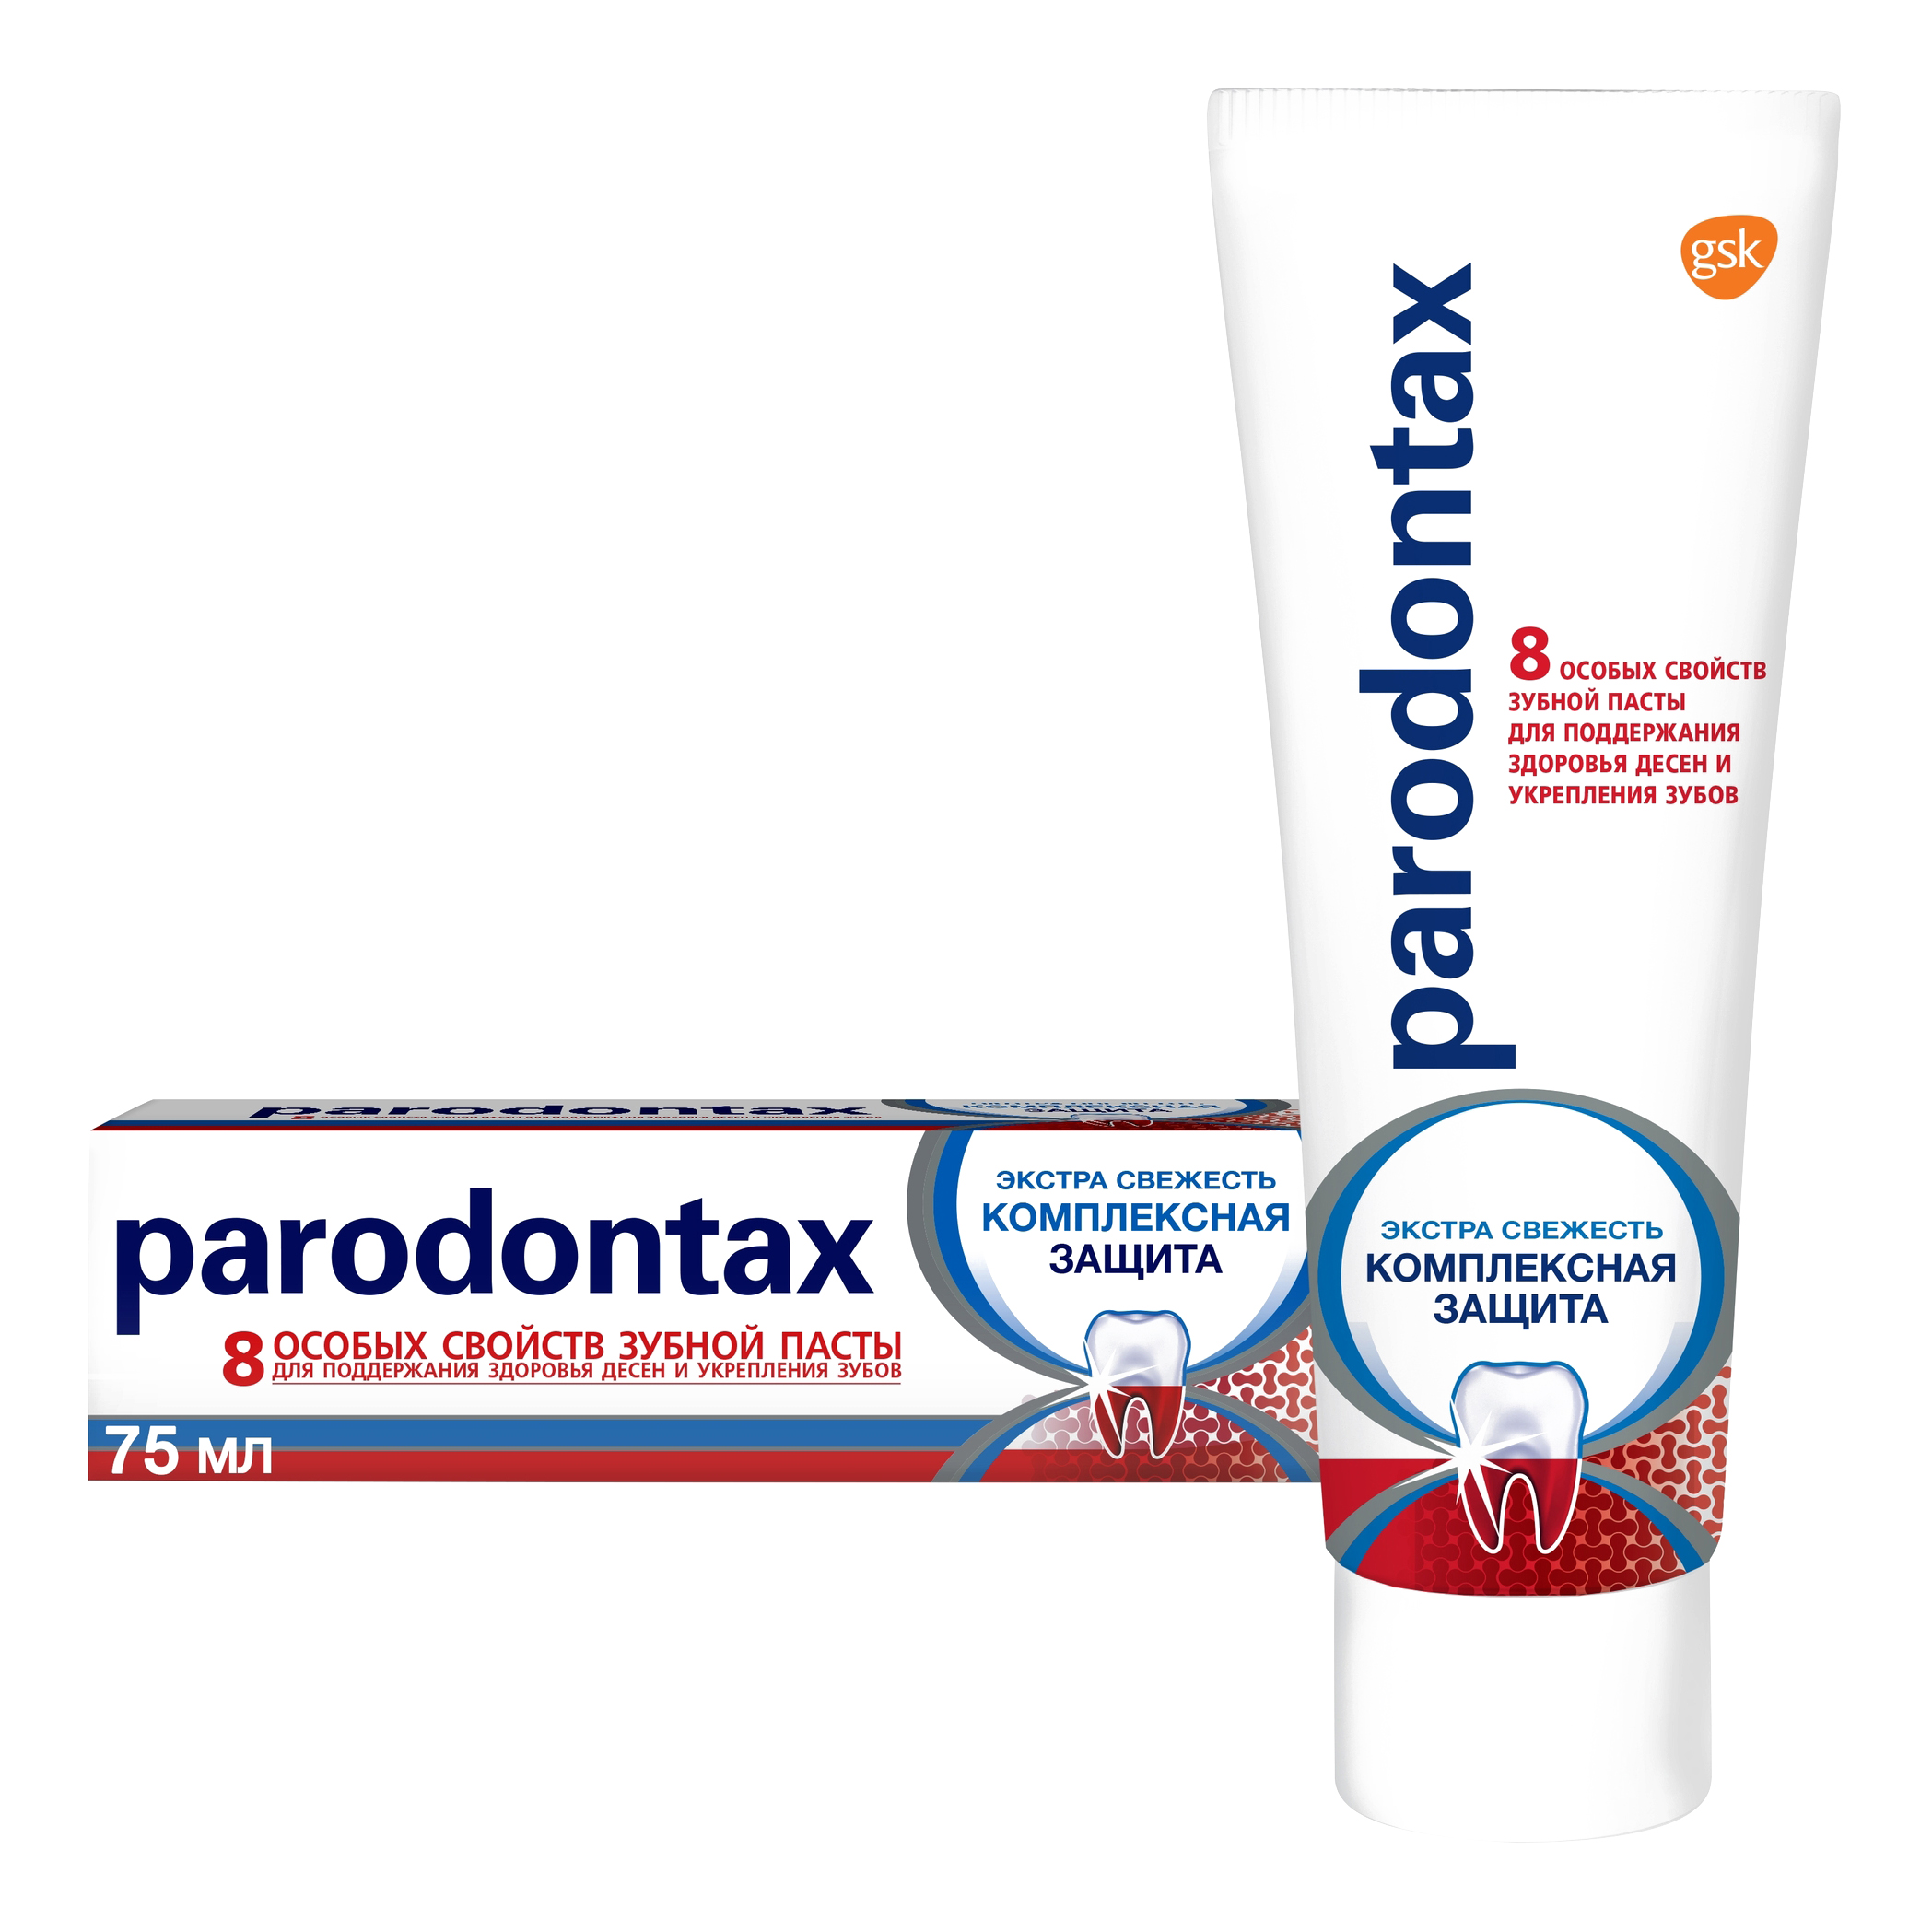 Зубная паста parodontax Комплексная Защита от воспаления и кровоточивости десен с фтором, 75 мл зубная паста parodontax комплексная защита 75 мл